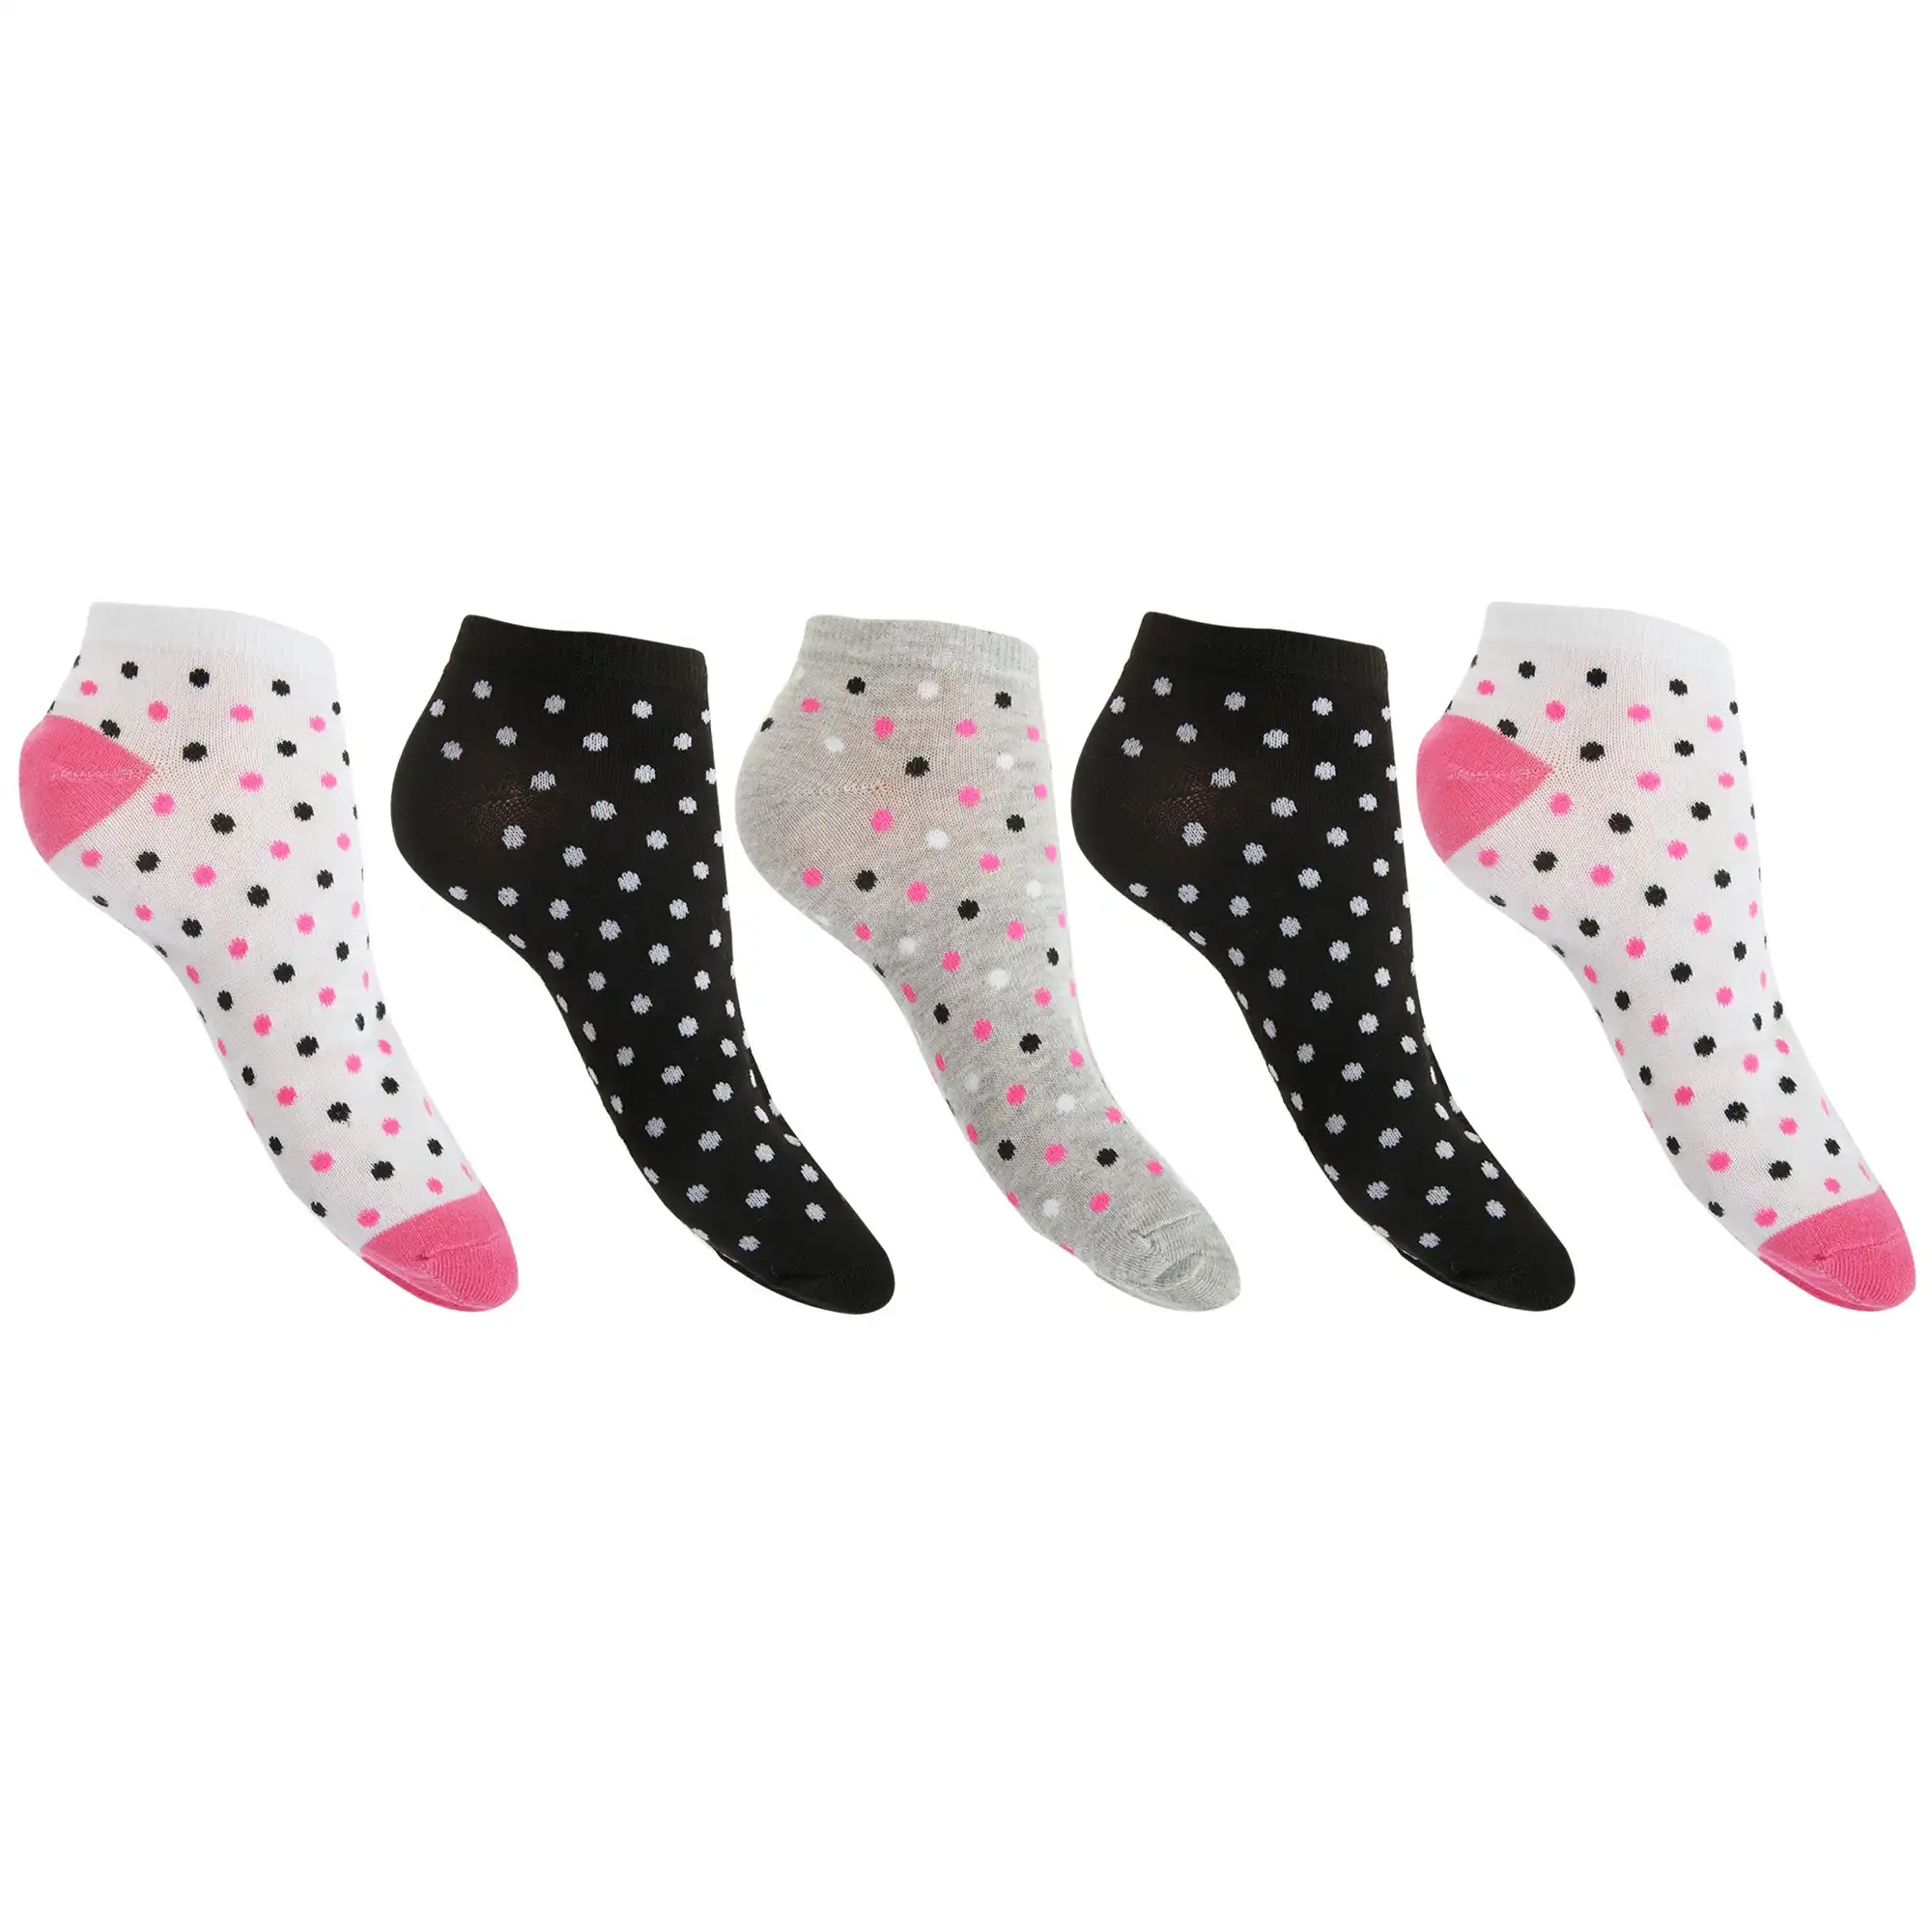 Floso Womens/Ladies Trainer Socks (Pack Of 5)